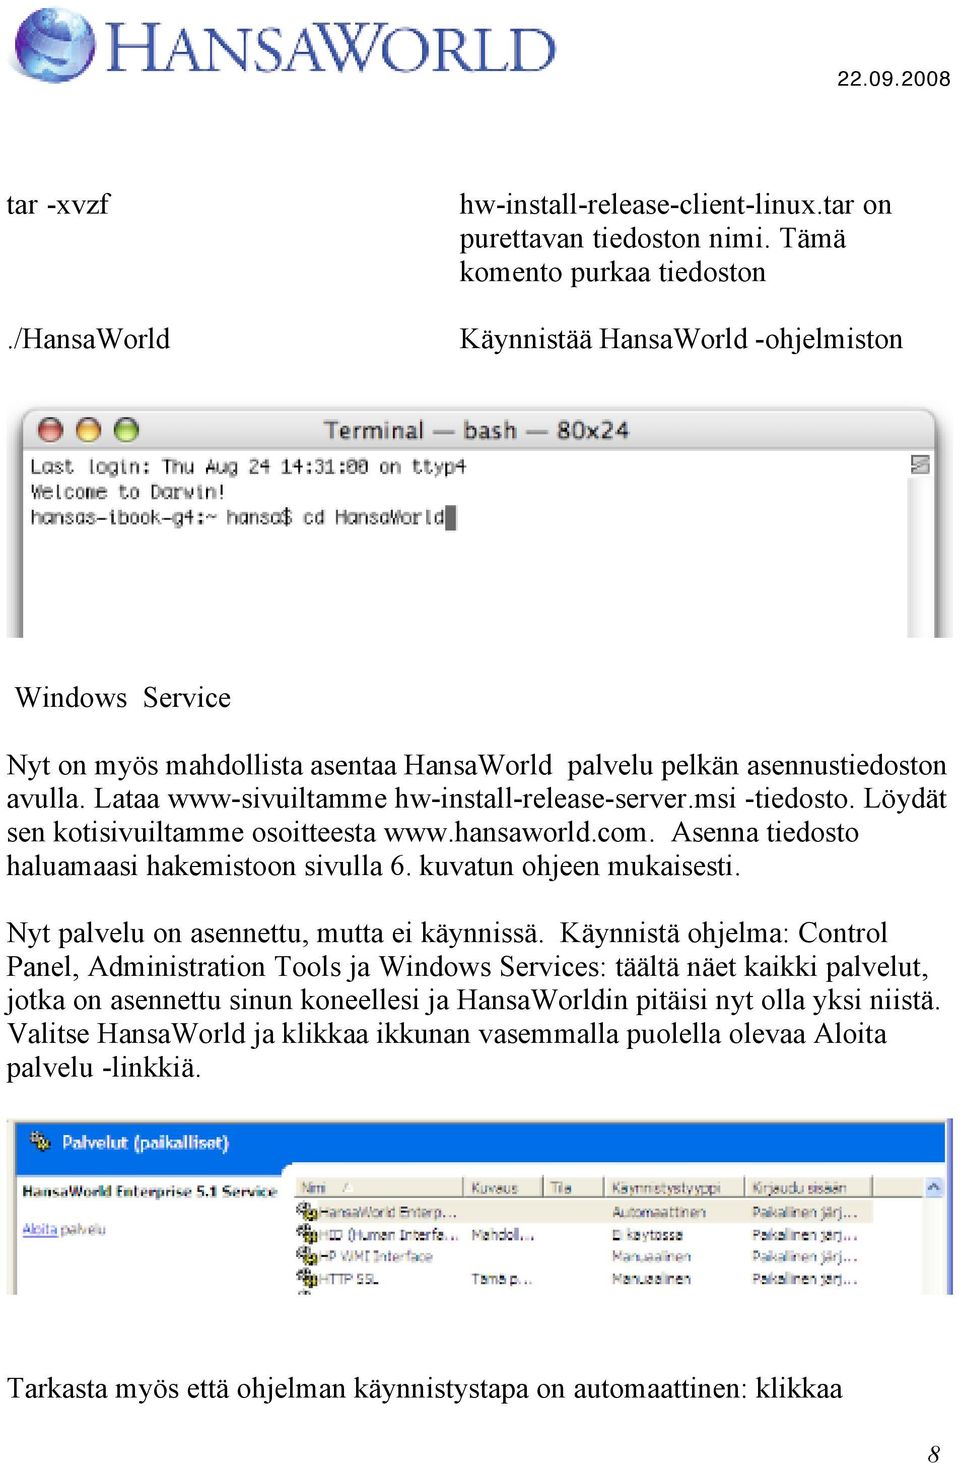 Lataa www-sivuiltamme hw-install-release-server.msi -tiedosto. Löydät sen kotisivuiltamme osoitteesta www.hansaworld.com. Asenna tiedosto haluamaasi hakemistoon sivulla 6. kuvatun ohjeen mukaisesti.